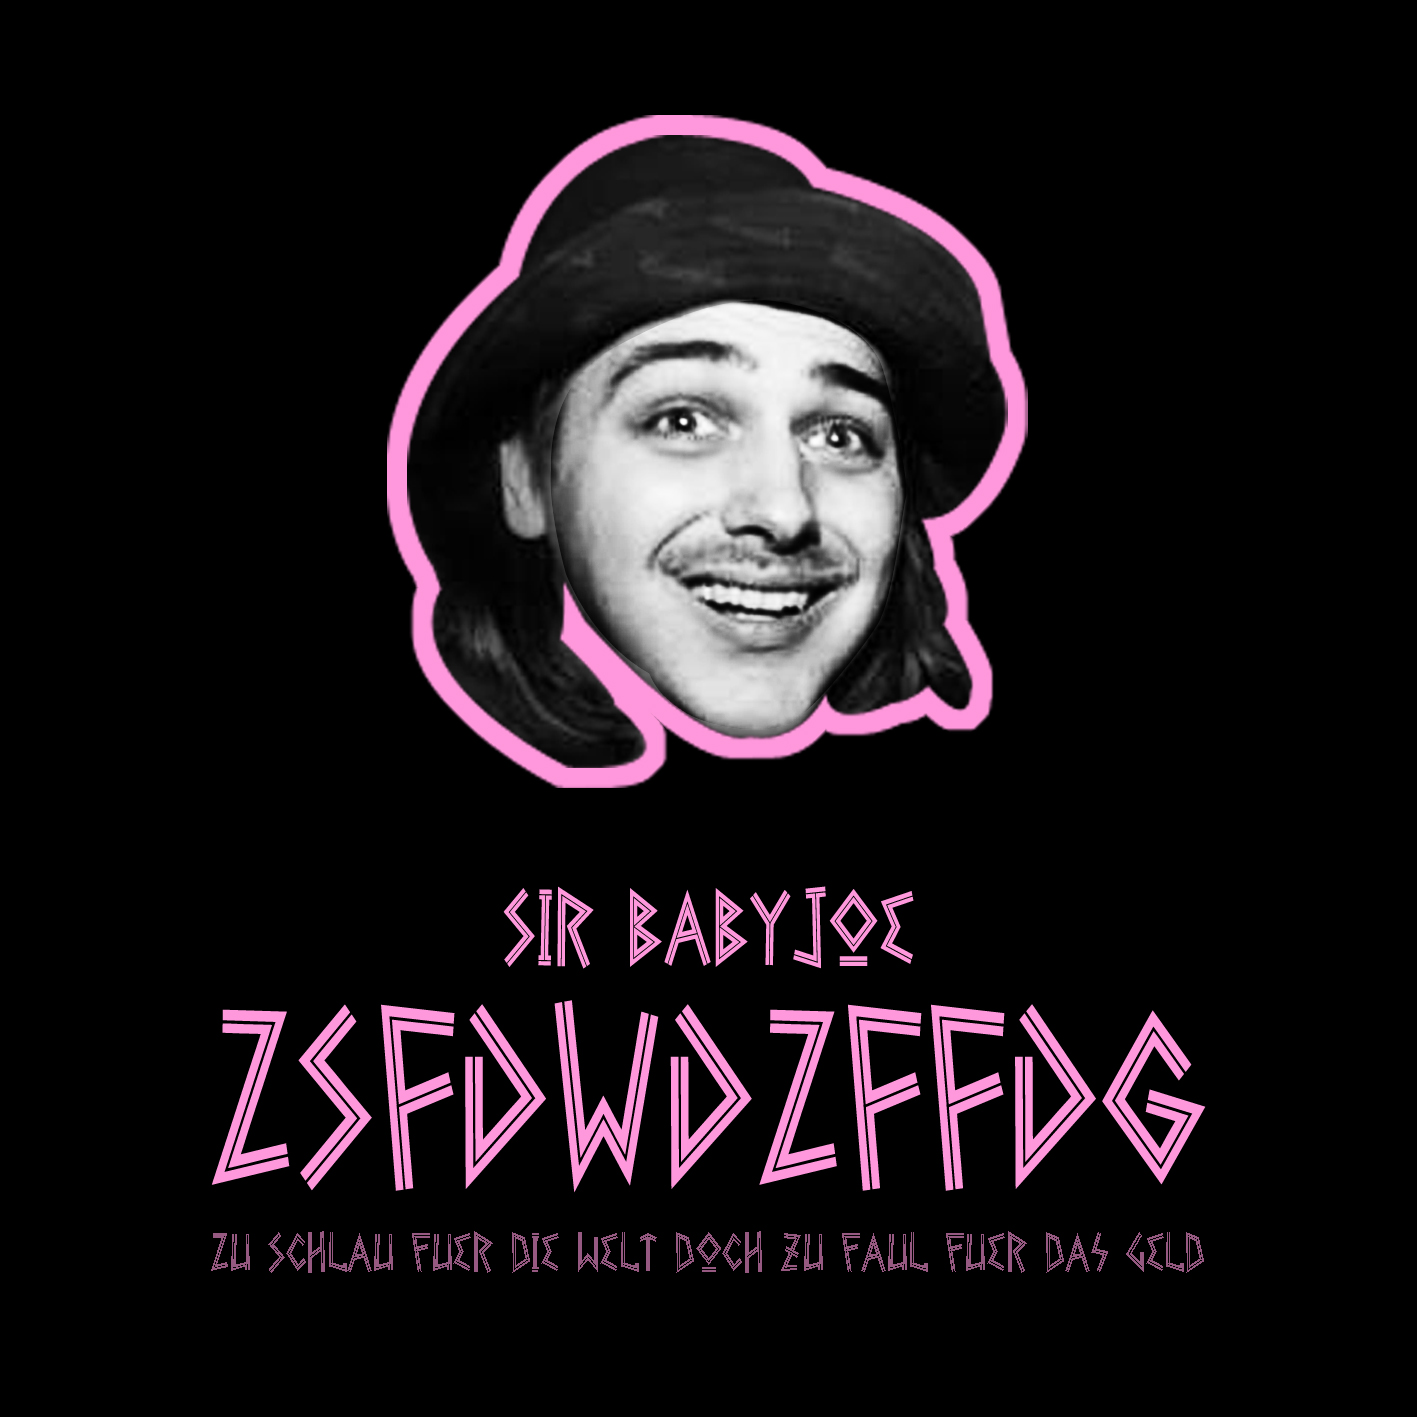 Sir Babyjoe - ZSFDWDZFFDG